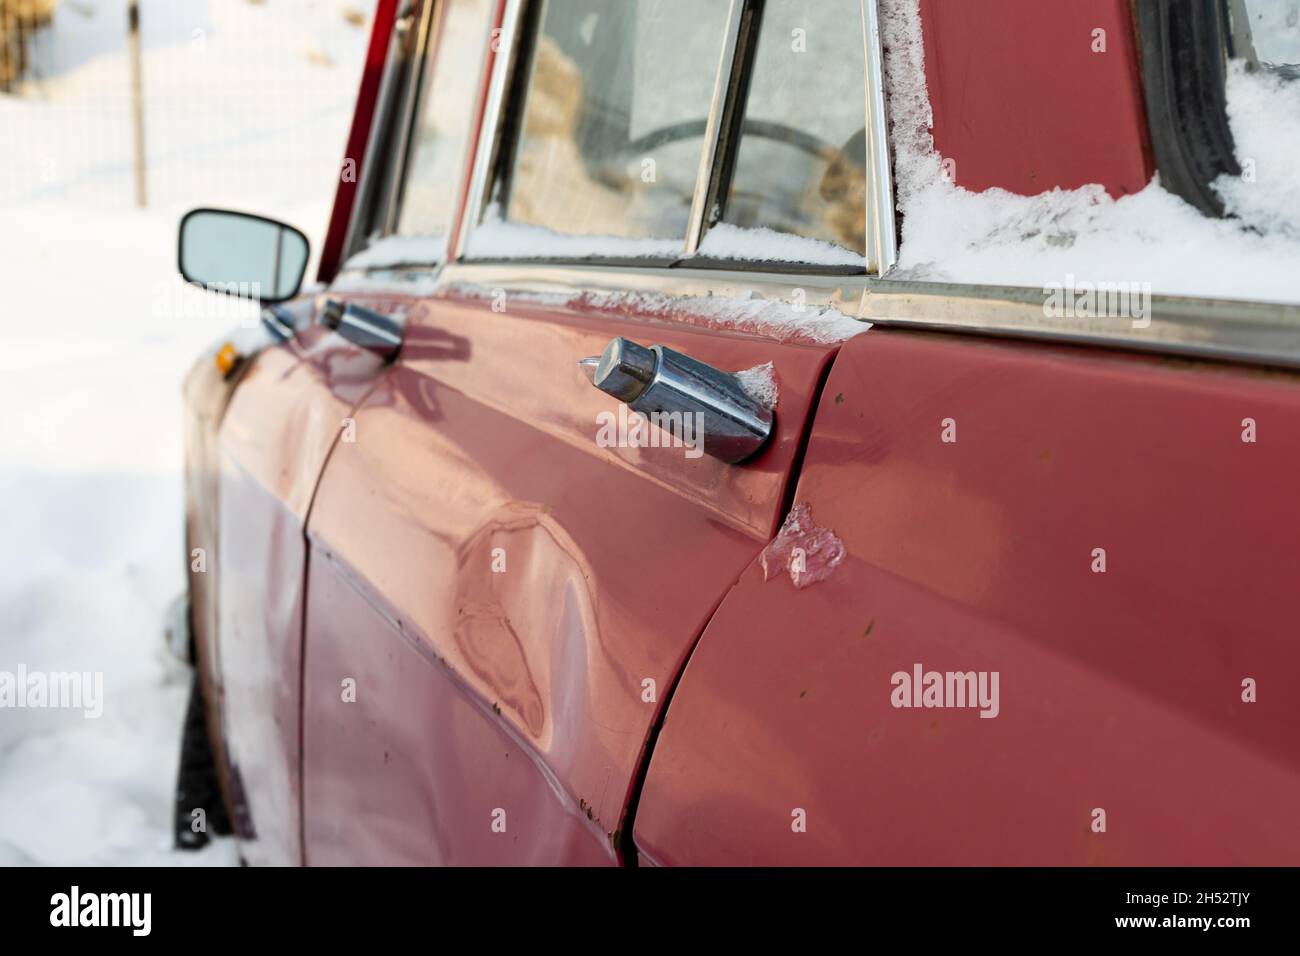 vieille voiture rétro brisée rouge rouillé vieux garé en hiver sur fond de neige le jour d'hiver glacial Banque D'Images